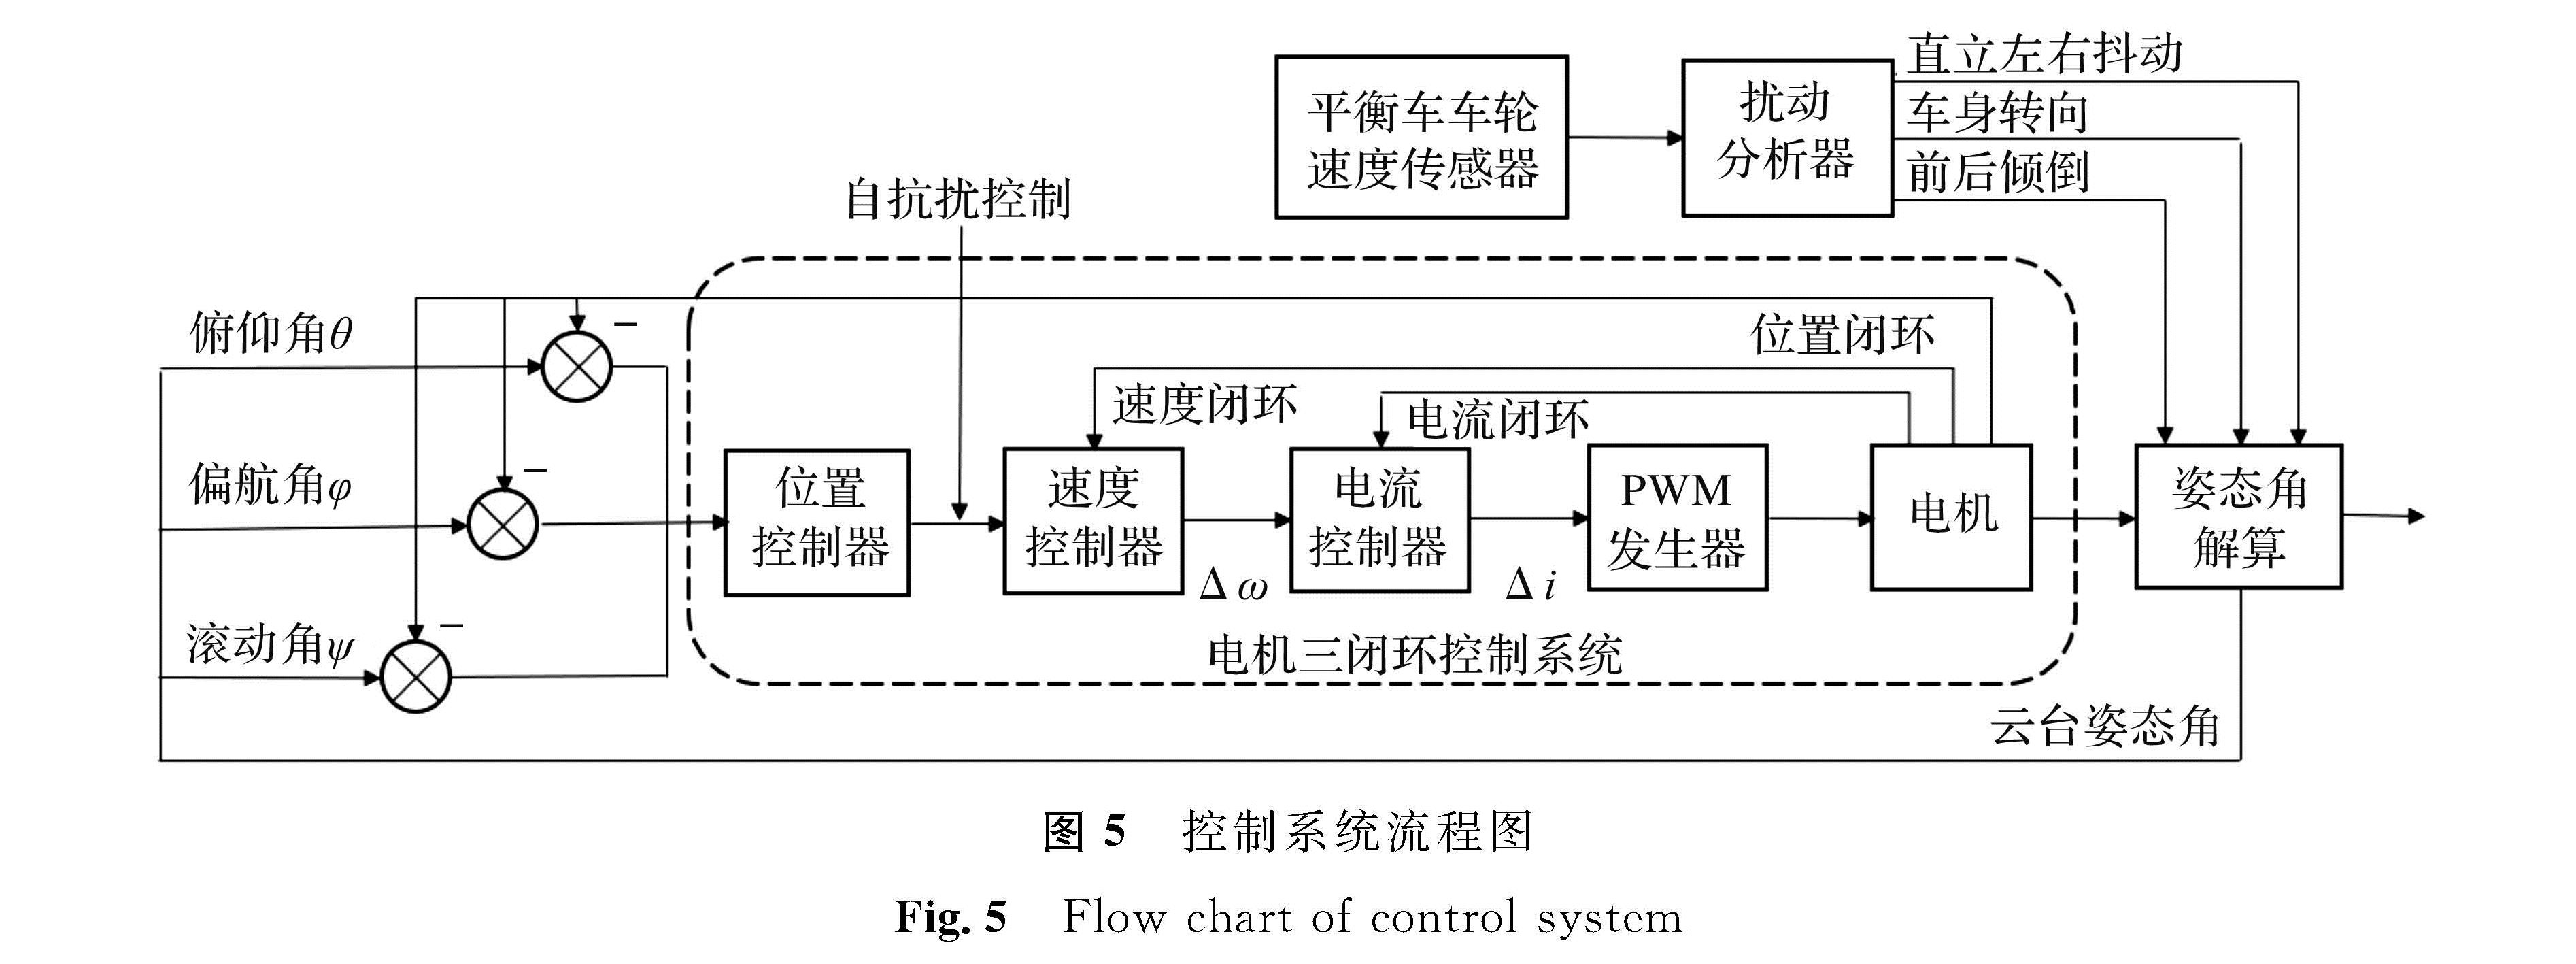 图5 控制系统流程图<br/>Fig.5 Flow chart of control system